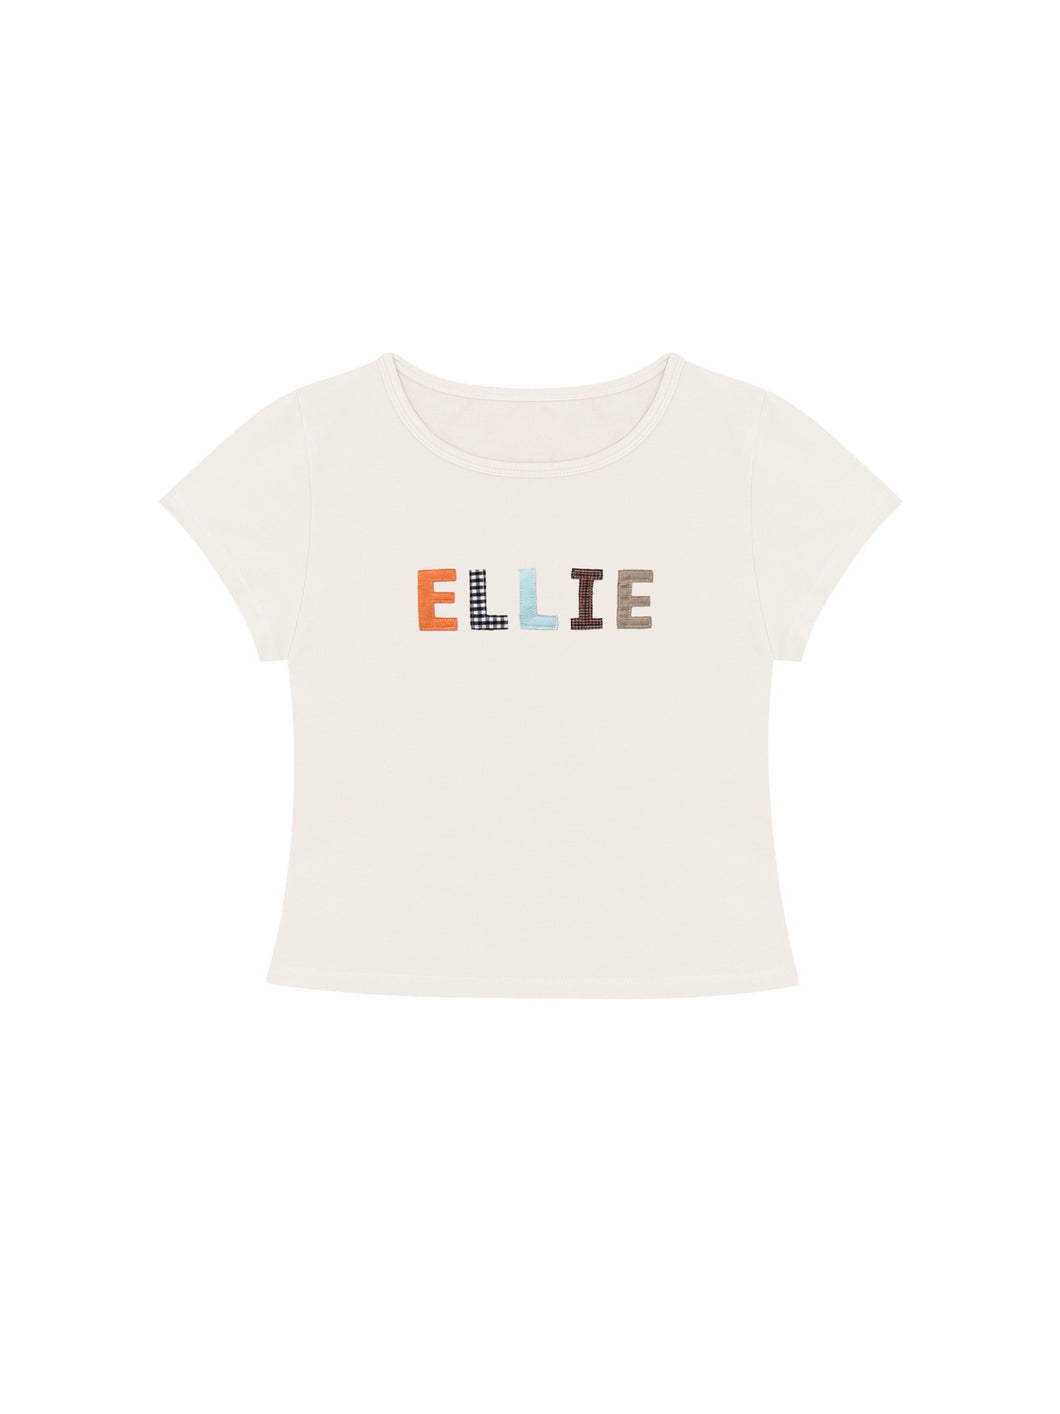 ELLIE Baby Tee